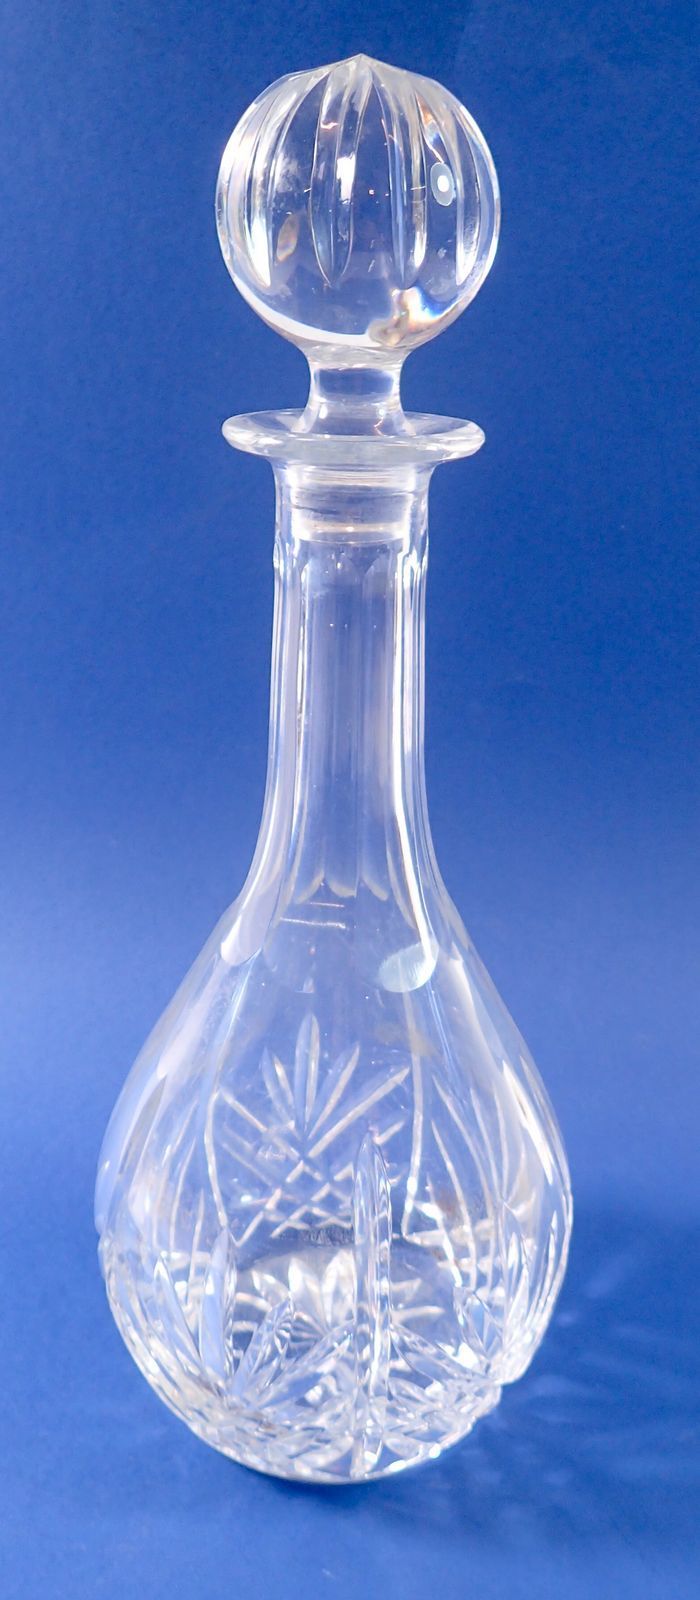 A cut glass spirit decanter, 33cm tall